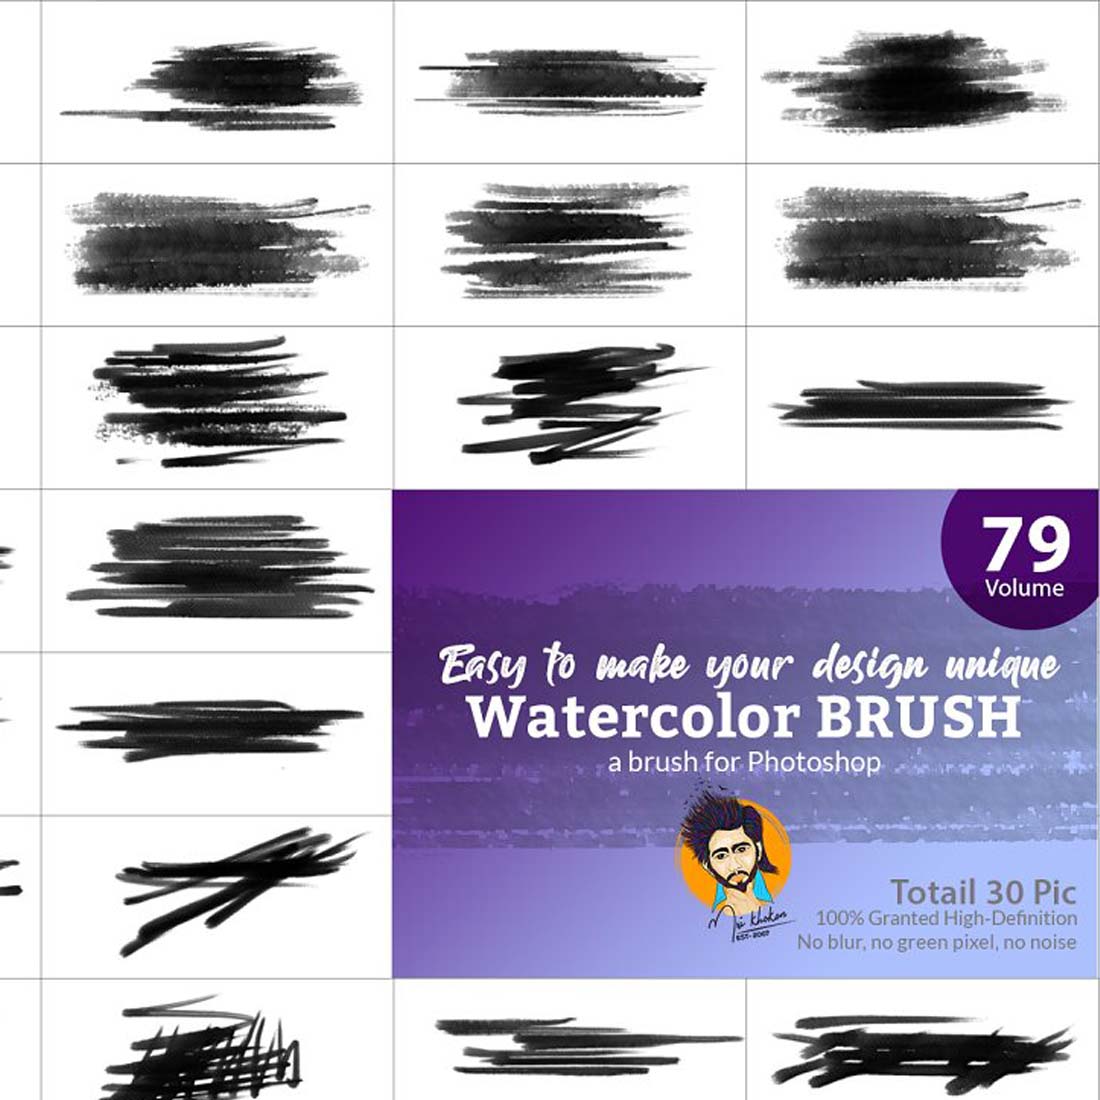 Watercolor Brush Bundle 04 preview image.